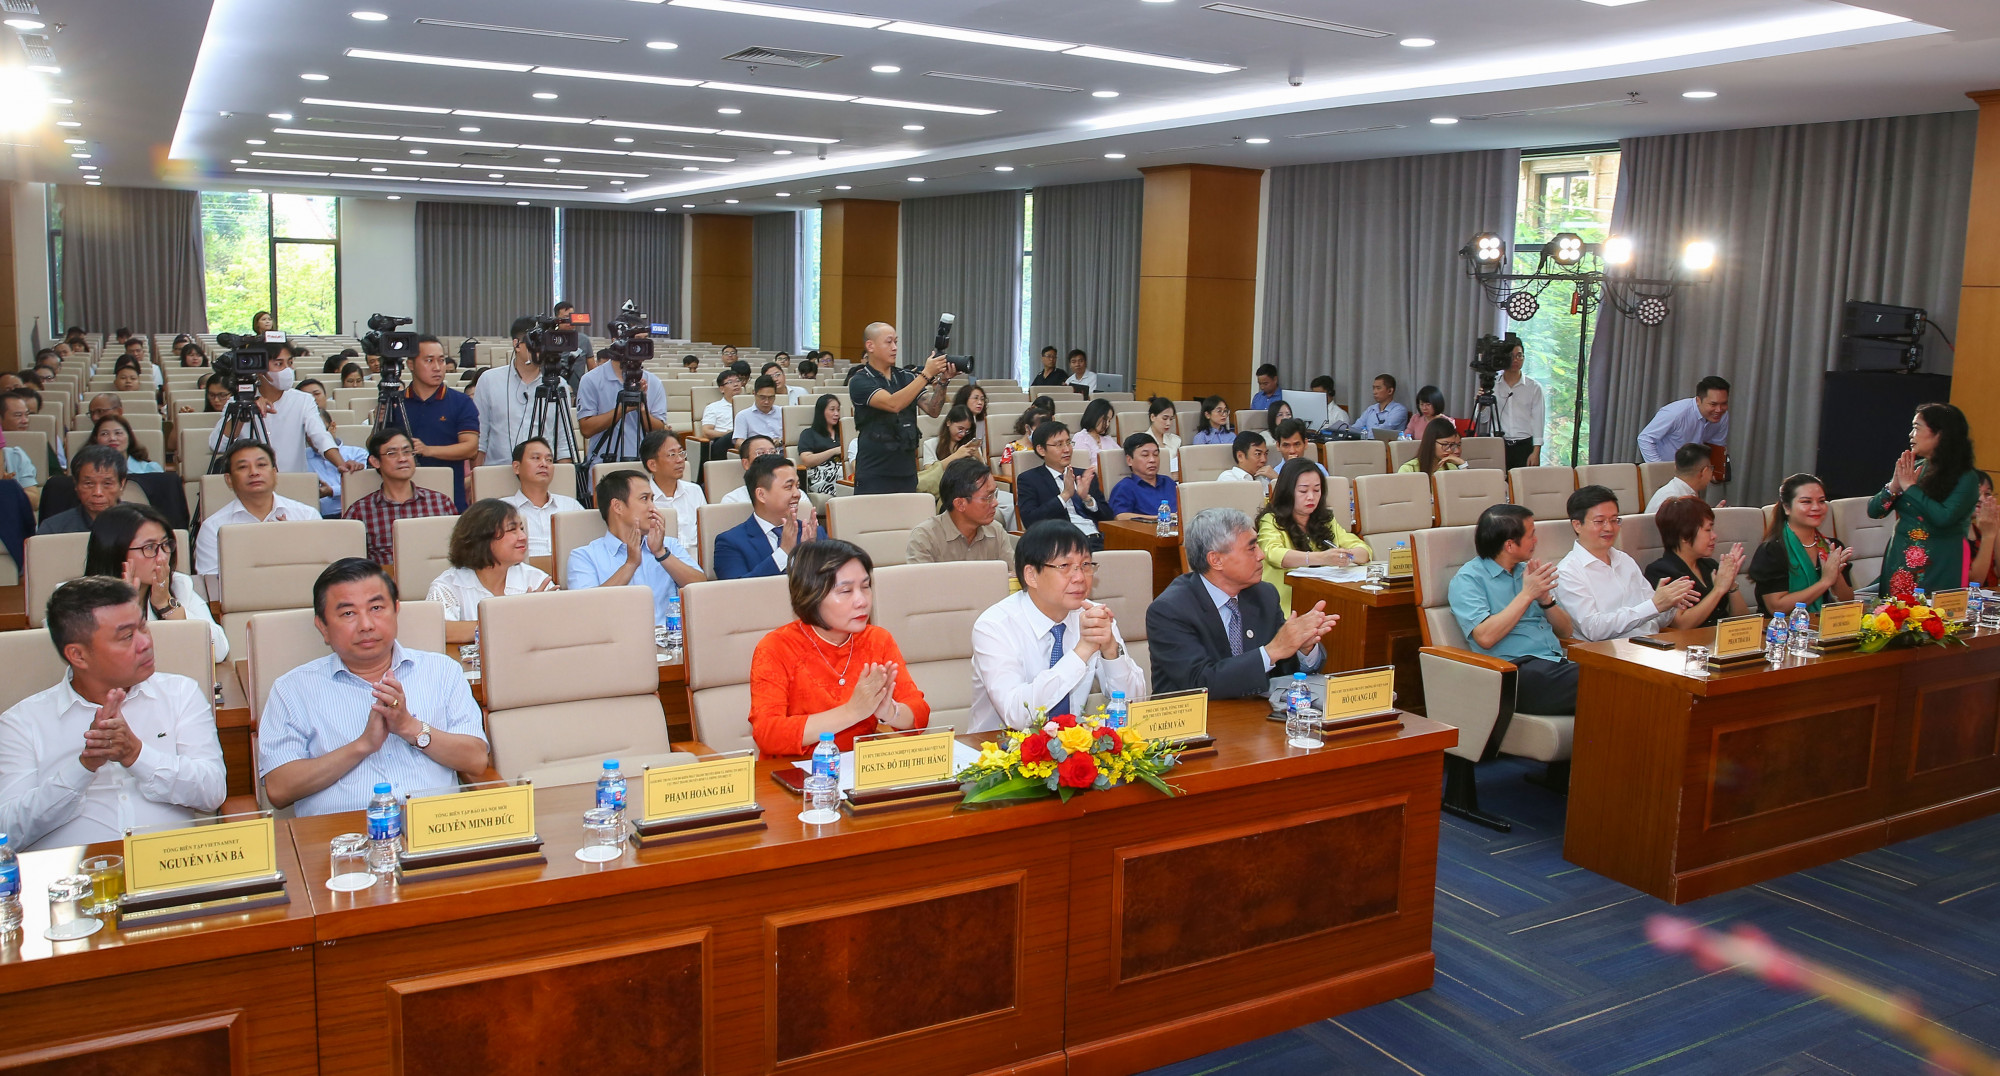 Hội thảo có sự tham dự của lãnh đạo cơ quan quản lý báo chí, lãnh đạo các cơ quan báo chí hàng đầu Việt Nam cùng nhiều chuyên gia báo chí có kinh nghiệm.